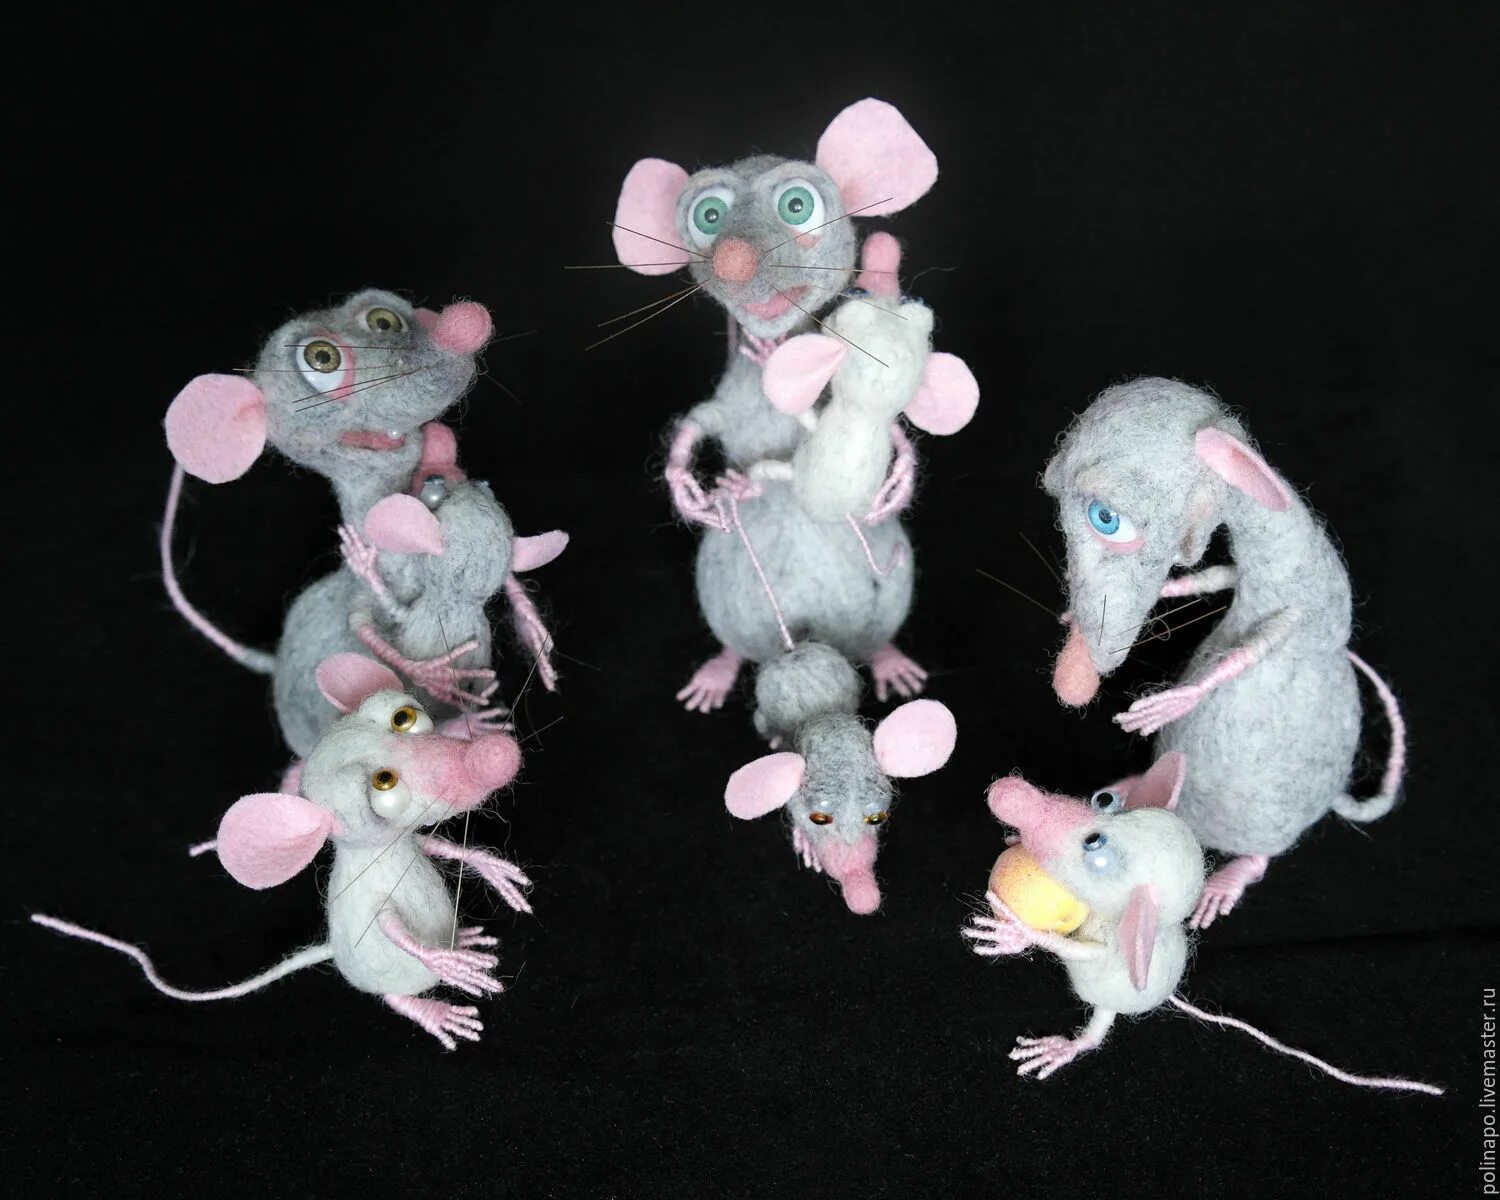 F mice